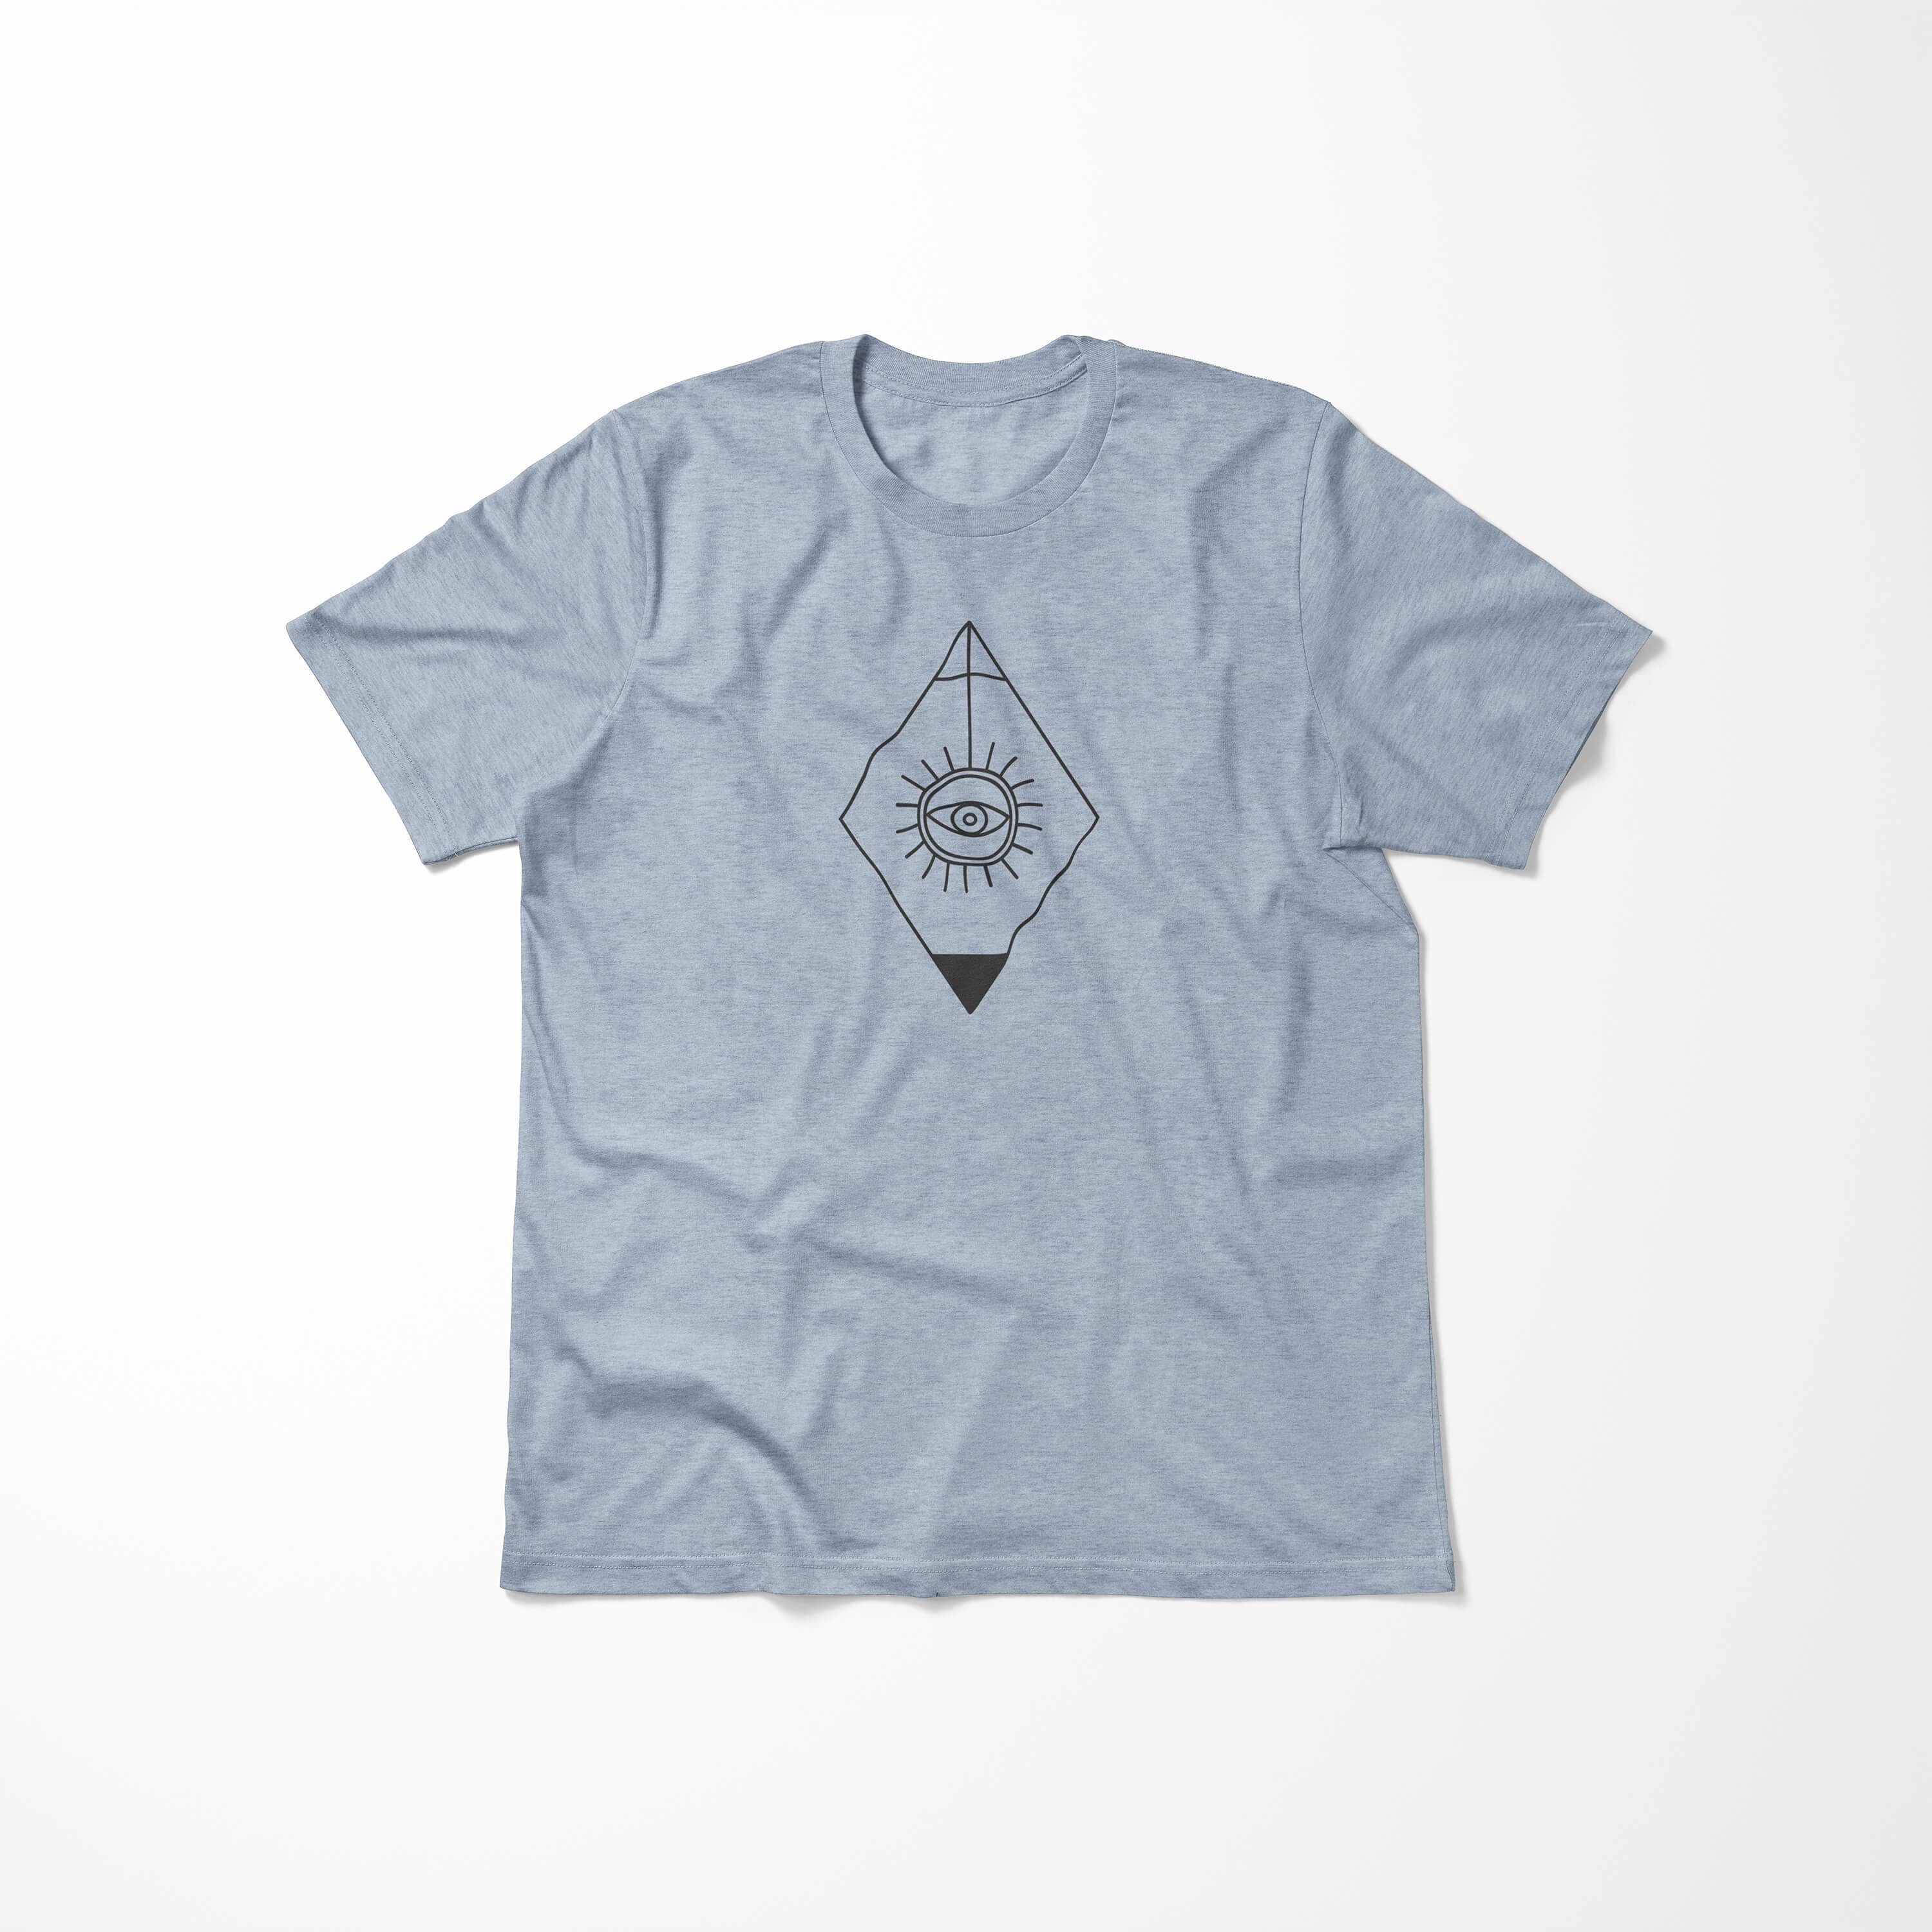 No.0001 T-Shirt Symbole Premium Tragekomfort Struktur Denim angenehmer T-Shirt Alchemy feine Art Stonewash Serie Sinus